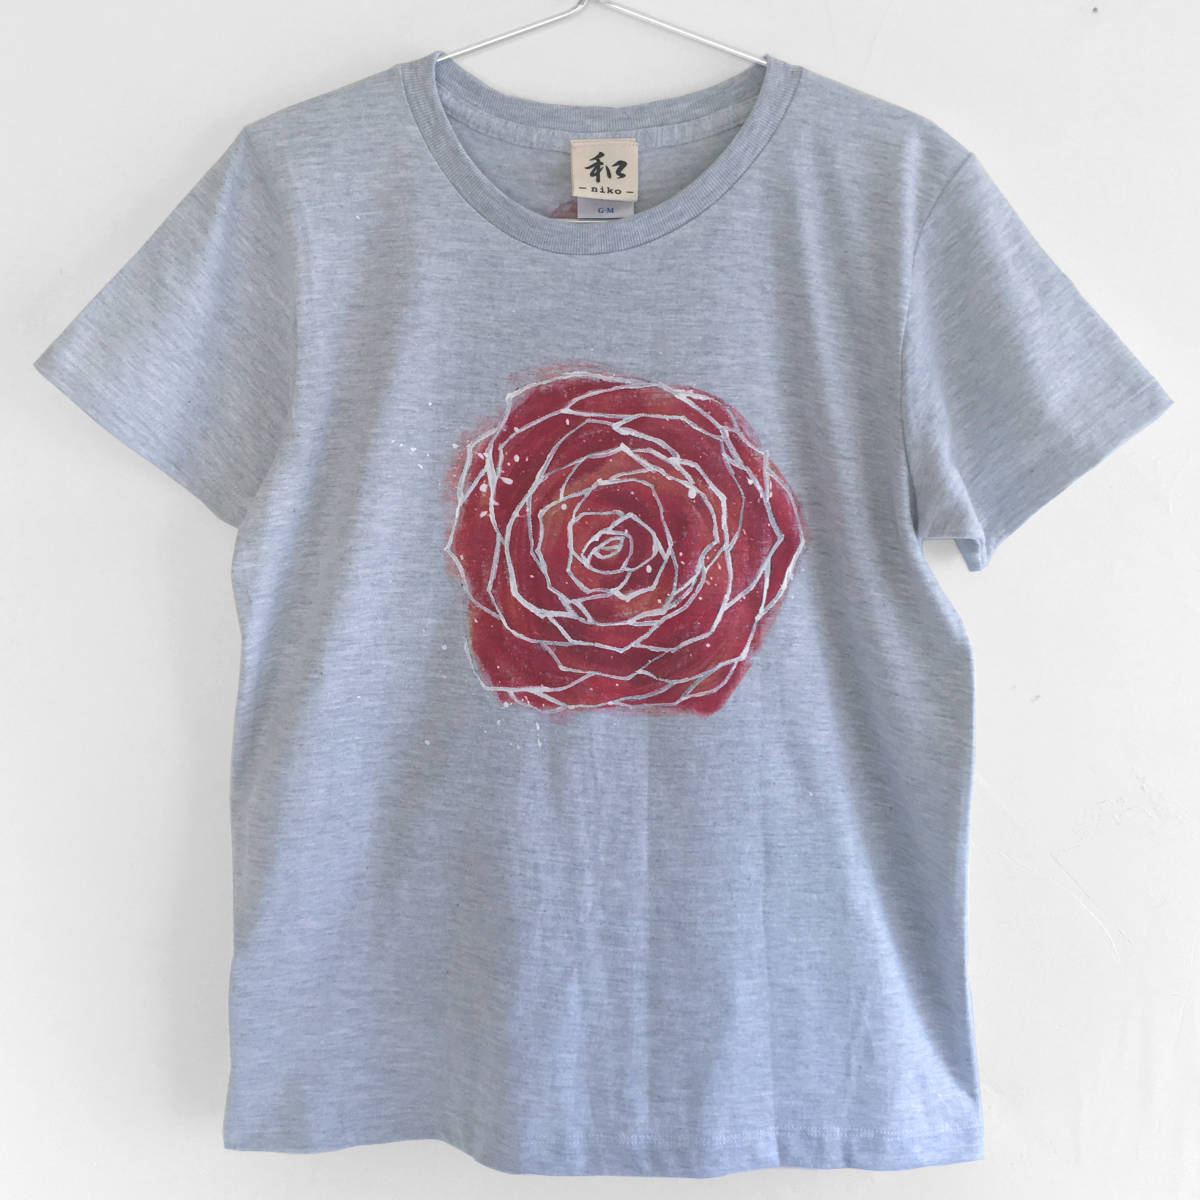 Camiseta de mujer talla M Camiseta con estampado de flores rosas pintada a mano Casual Rosa acuarela Navidad, talla m, cuello redondo, estampado